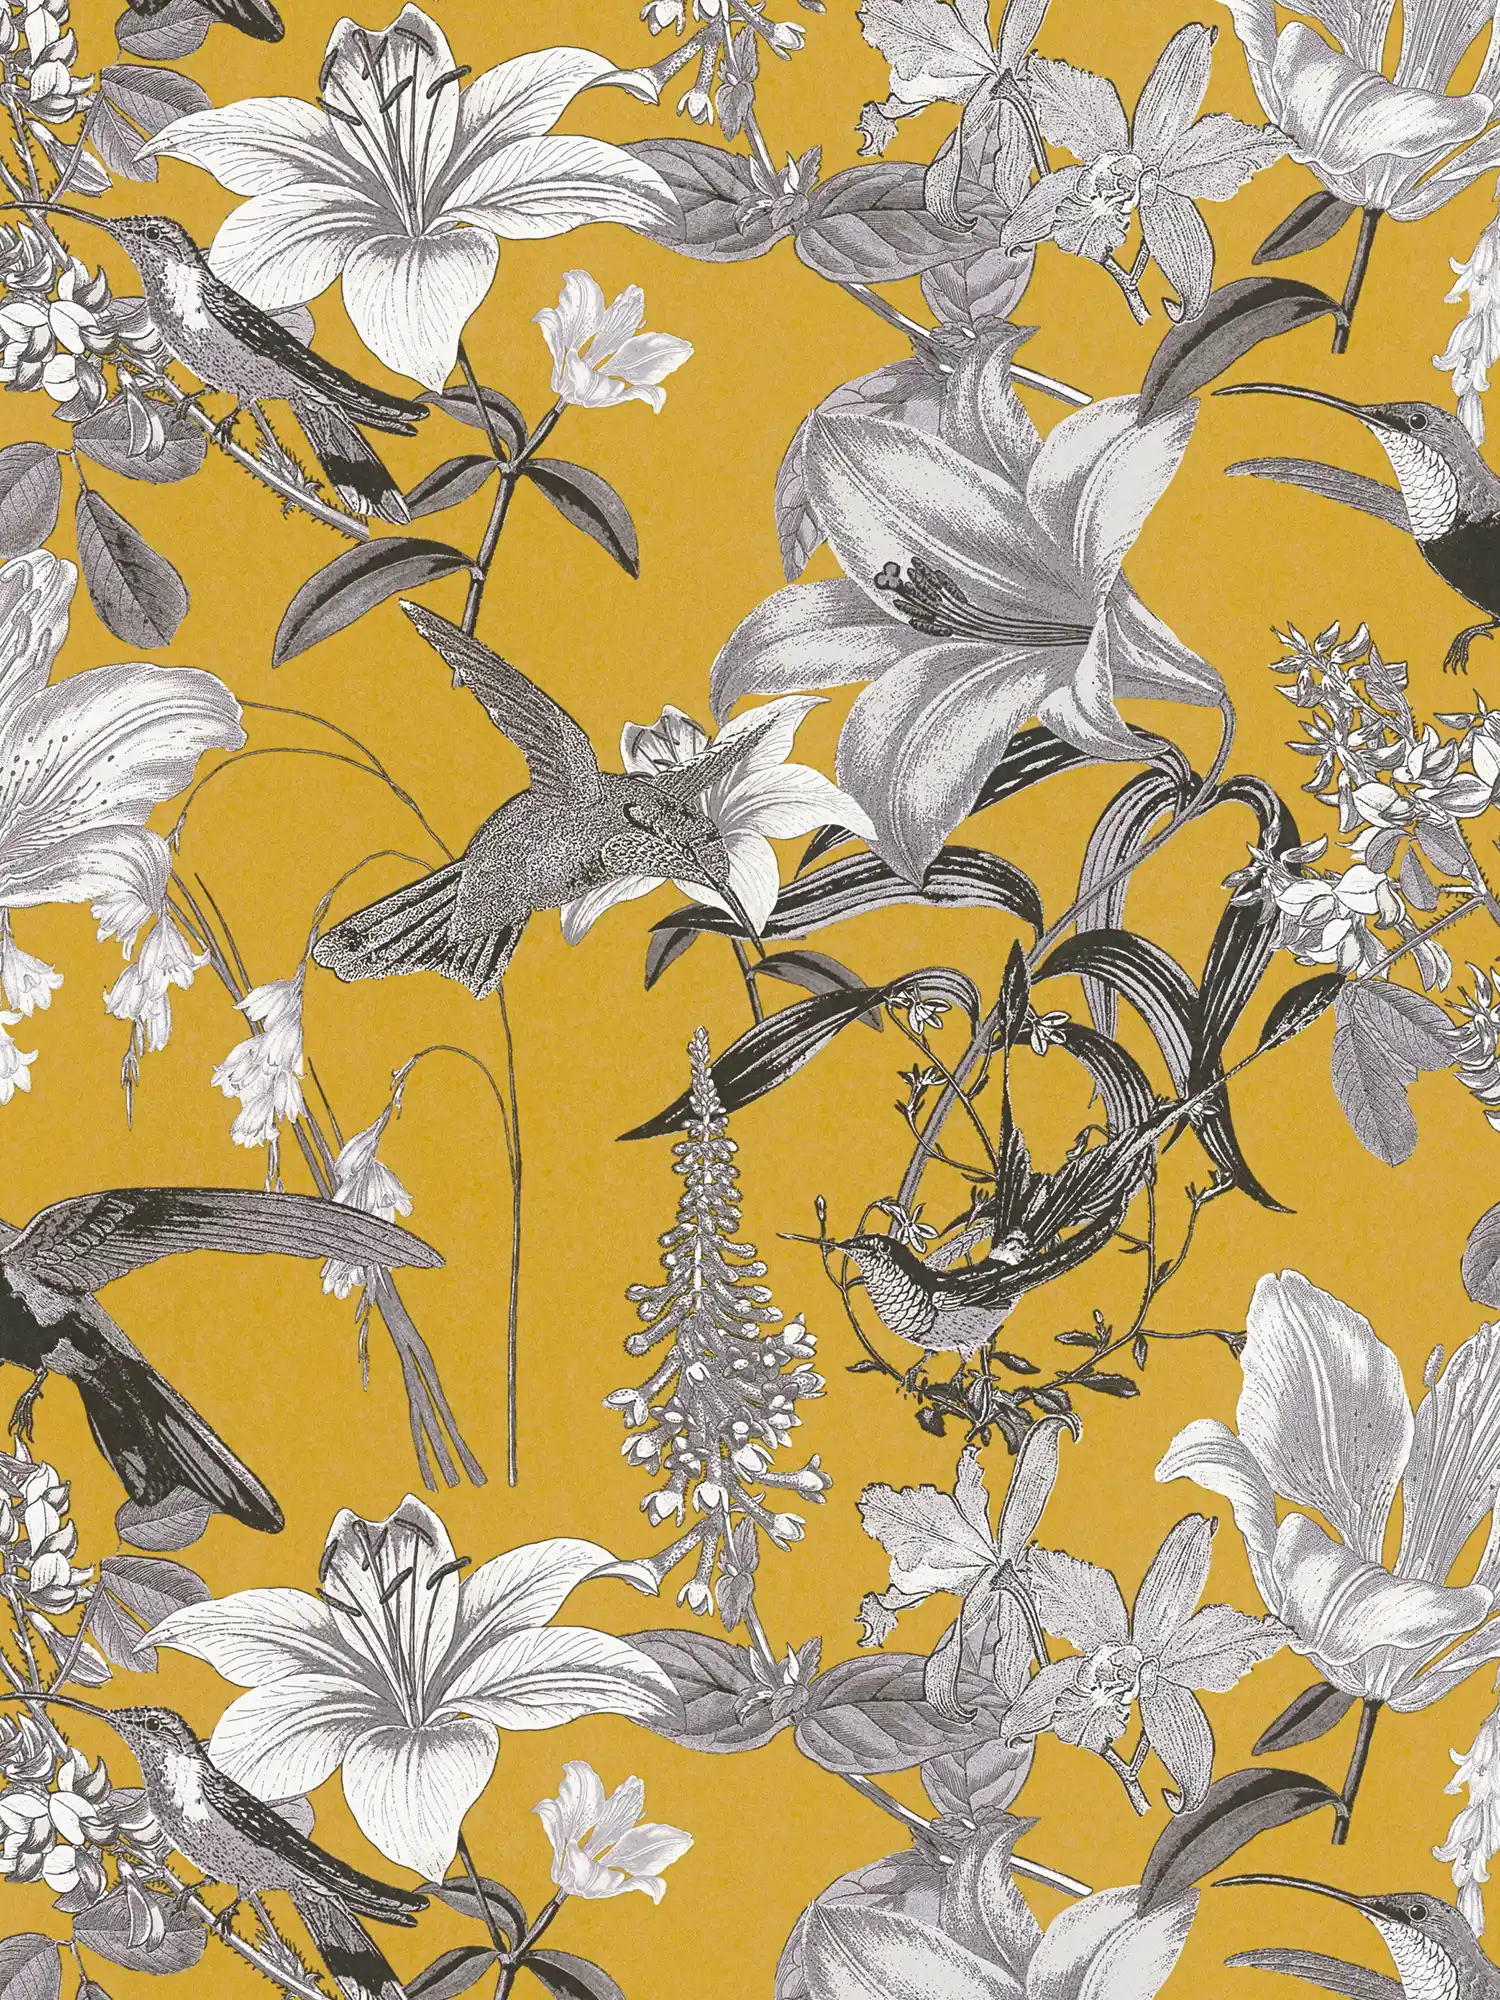 Bloemen behang mosterdgeel met bloemen & kolibrie patroon - geel, grijs, zwart
